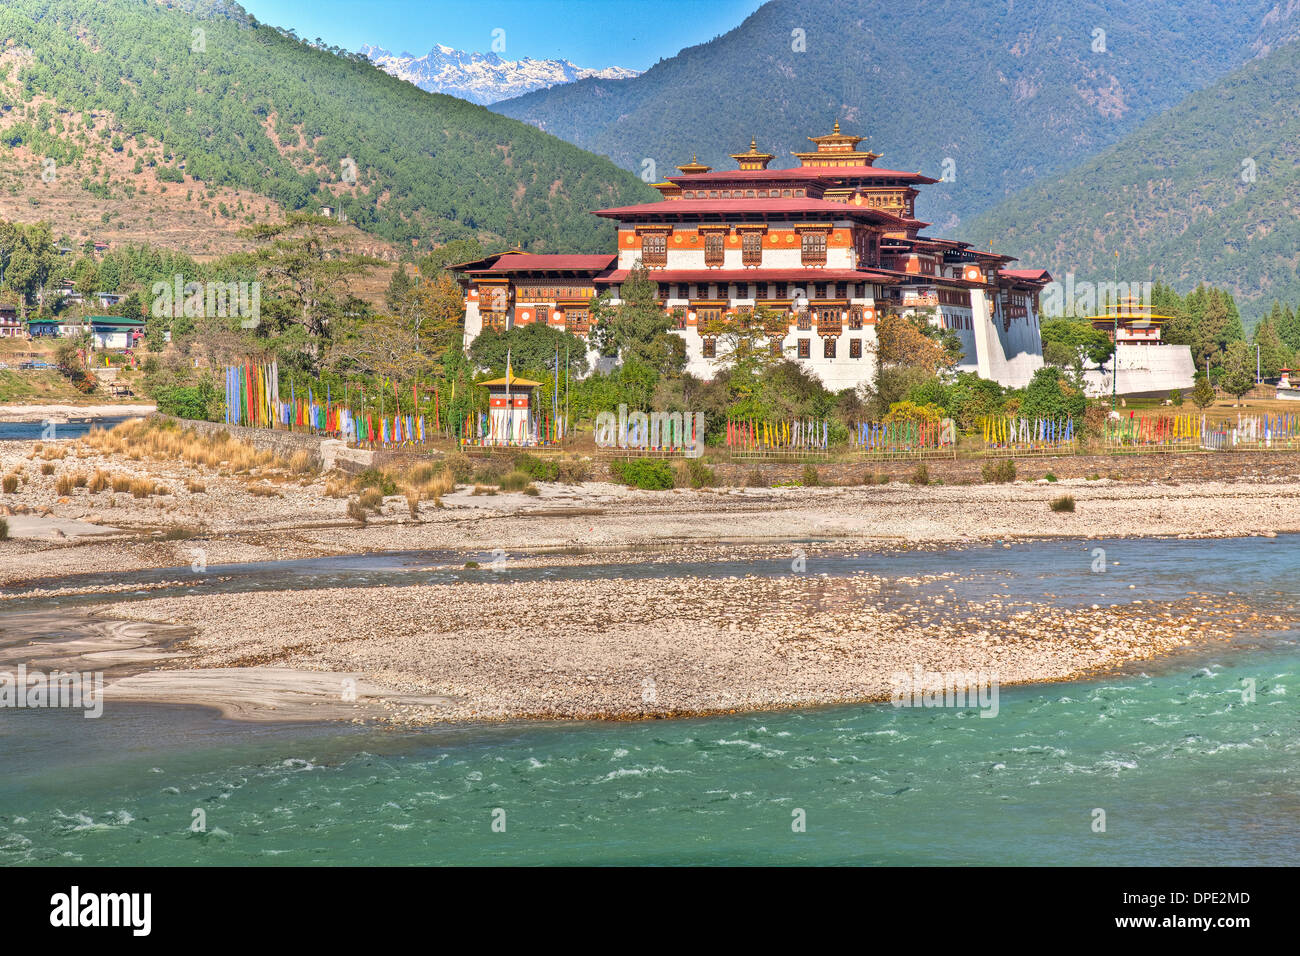 Punakha Dzong Monastero Bhutan montagna himalayana costruita originariamente nel 1300s sito sacro per il popolo del Bhutan su Phochu & Mochu Foto Stock